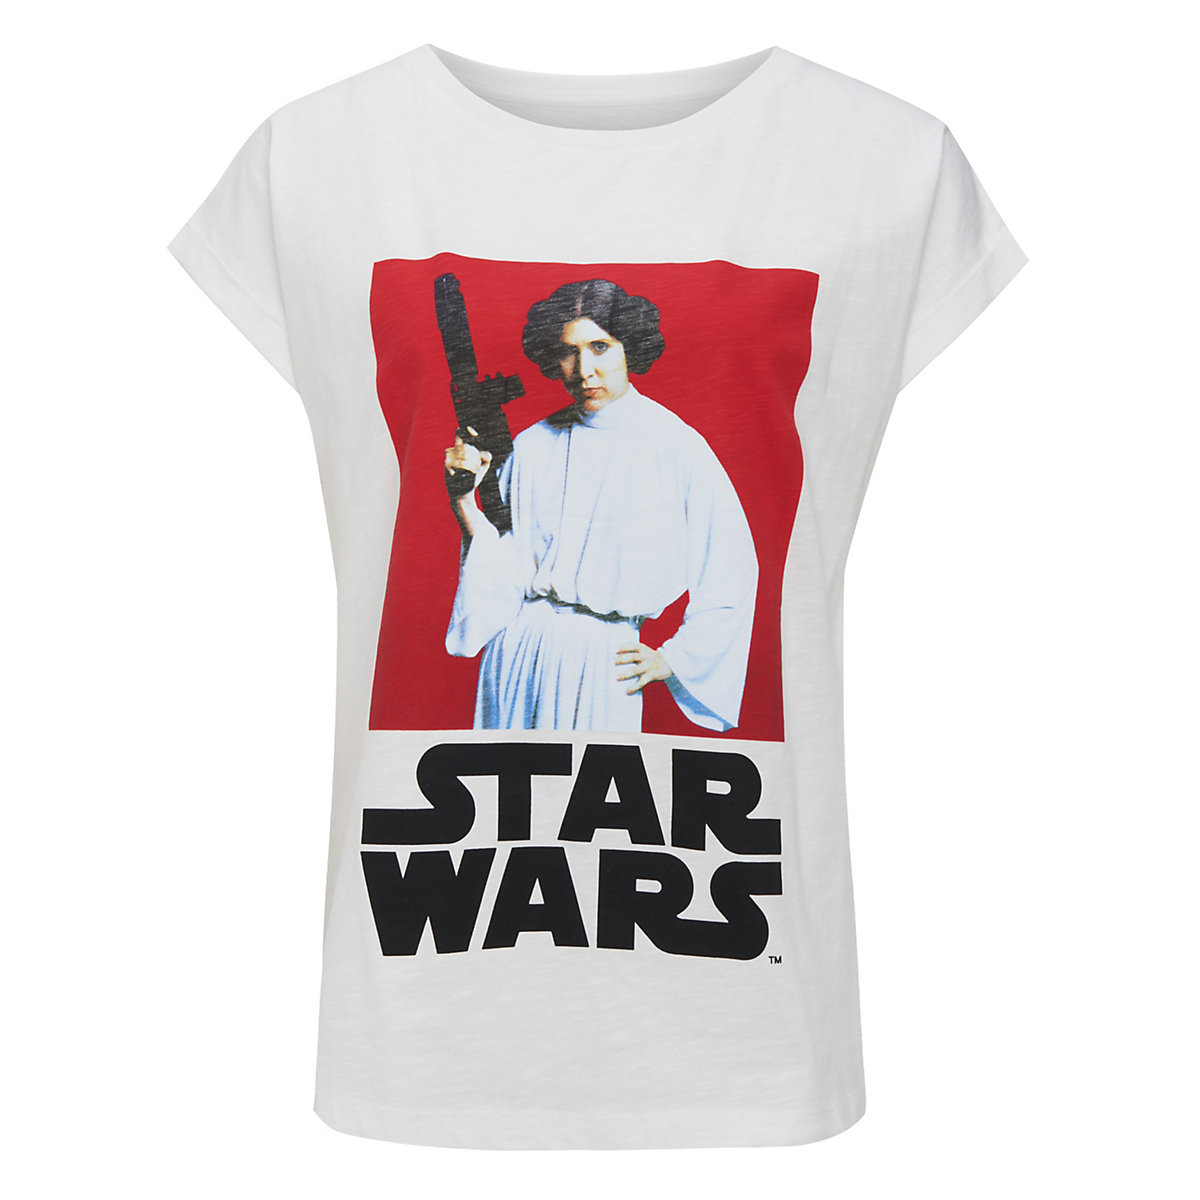 Star Wars Recovered T-Shirt Star Wars Princess Leia T-Shirts AdultW ecru